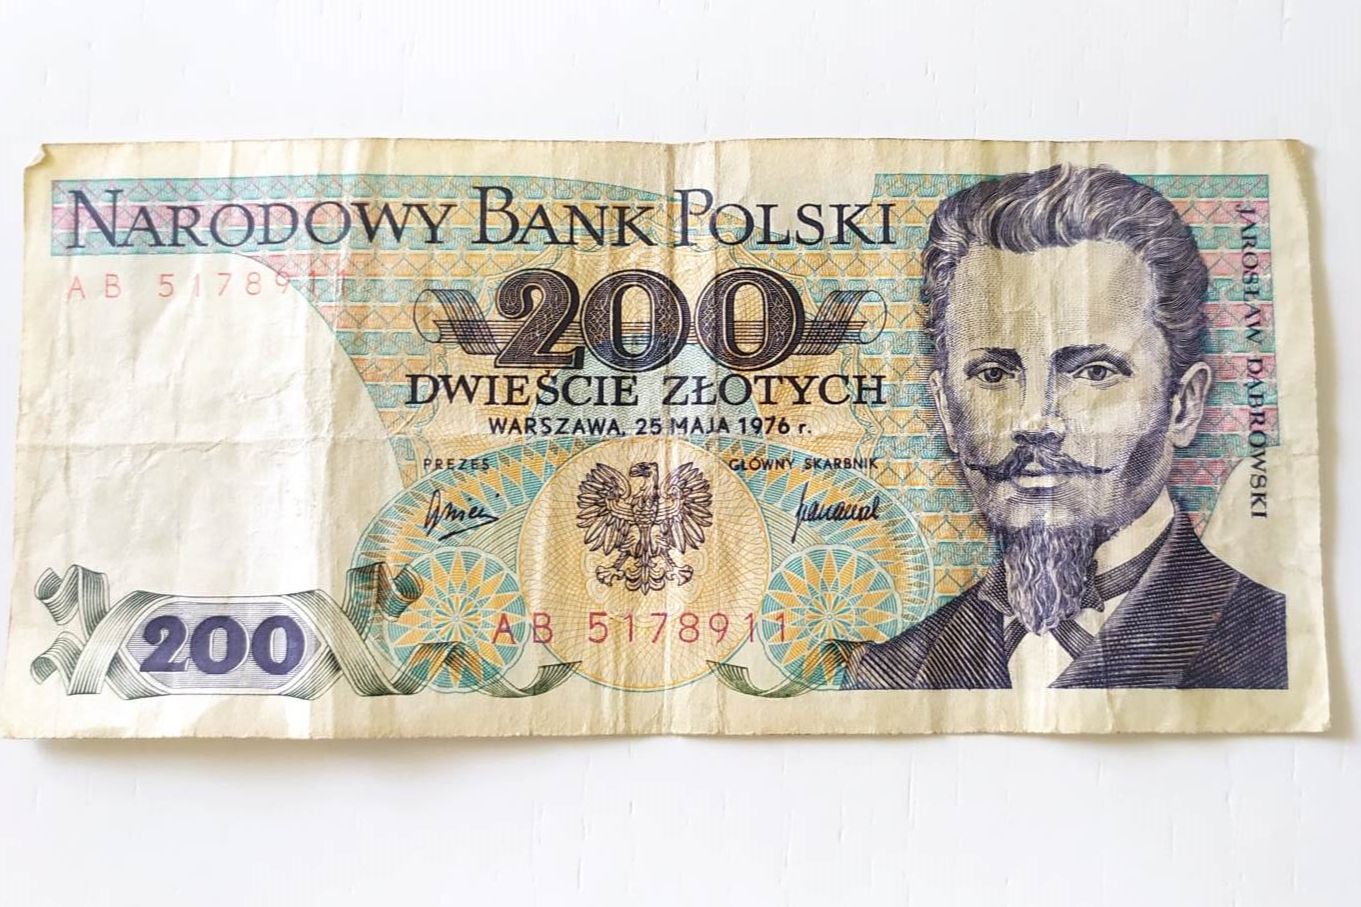 Stare banknoty z PRL-u — ile można na nich zarobić?